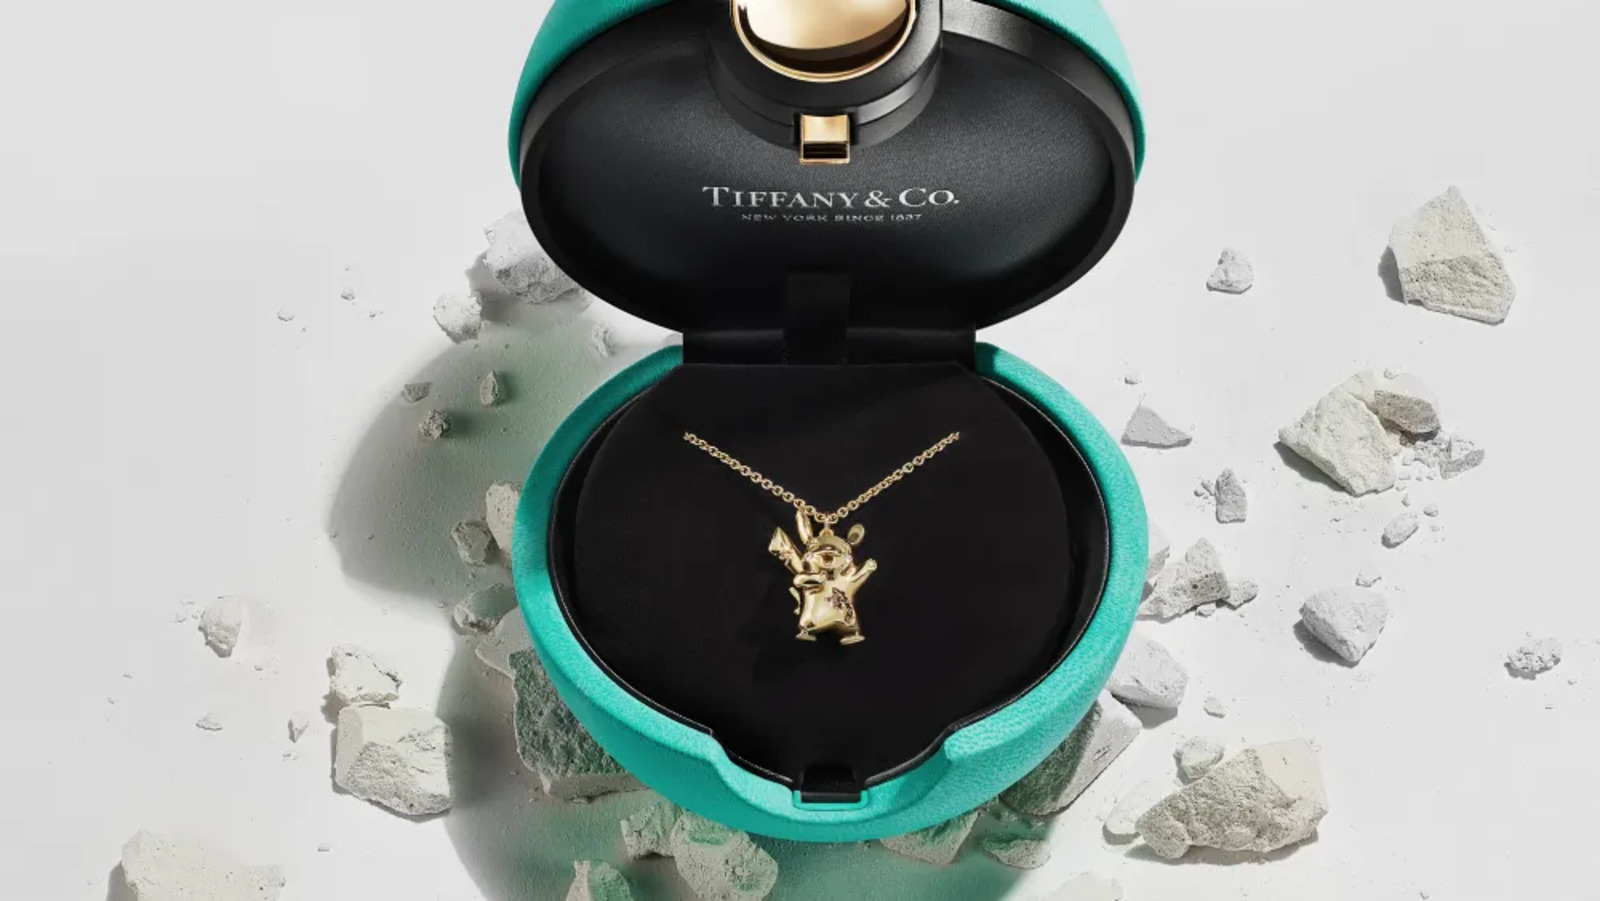 📿 Tiffany & Co випускає ювелірні вироби Pokémon за 29 тис. доларів